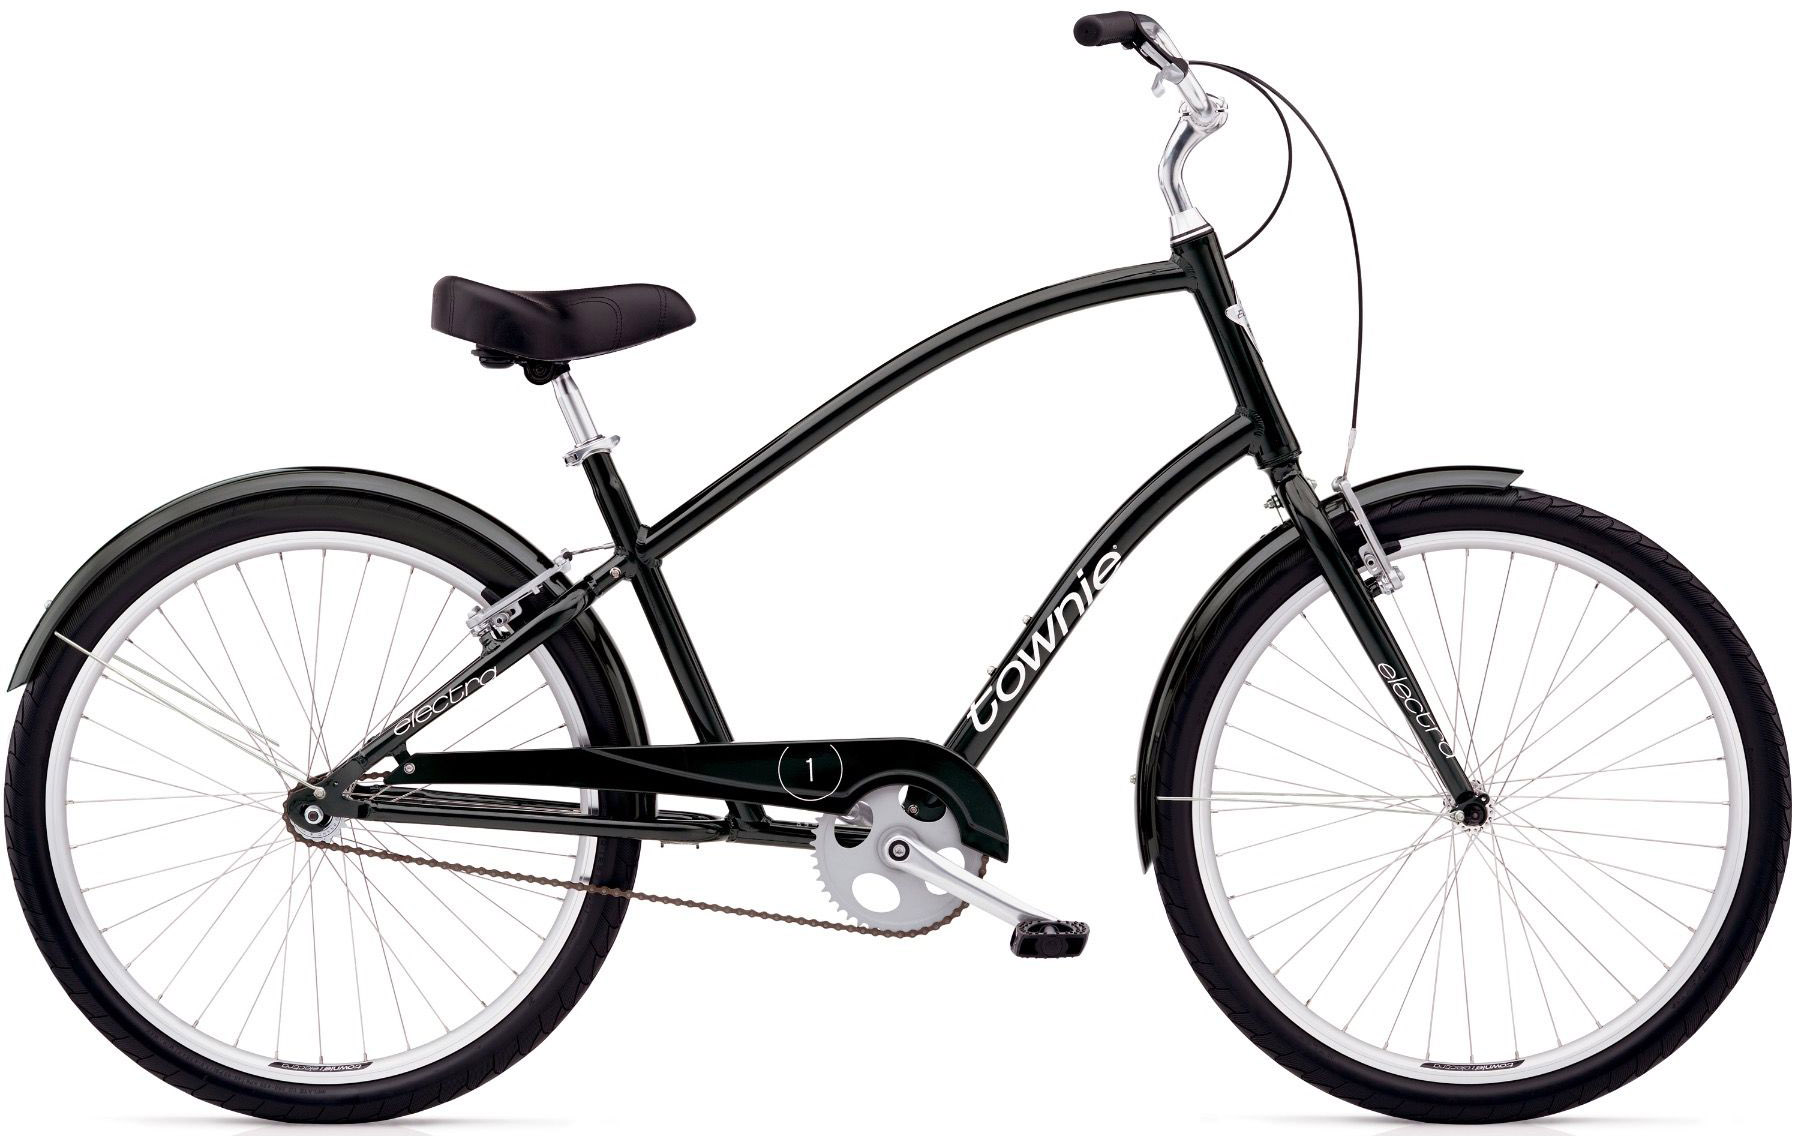  Отзывы о Городском велосипеде Electra Townie Original 1 Mens 2020